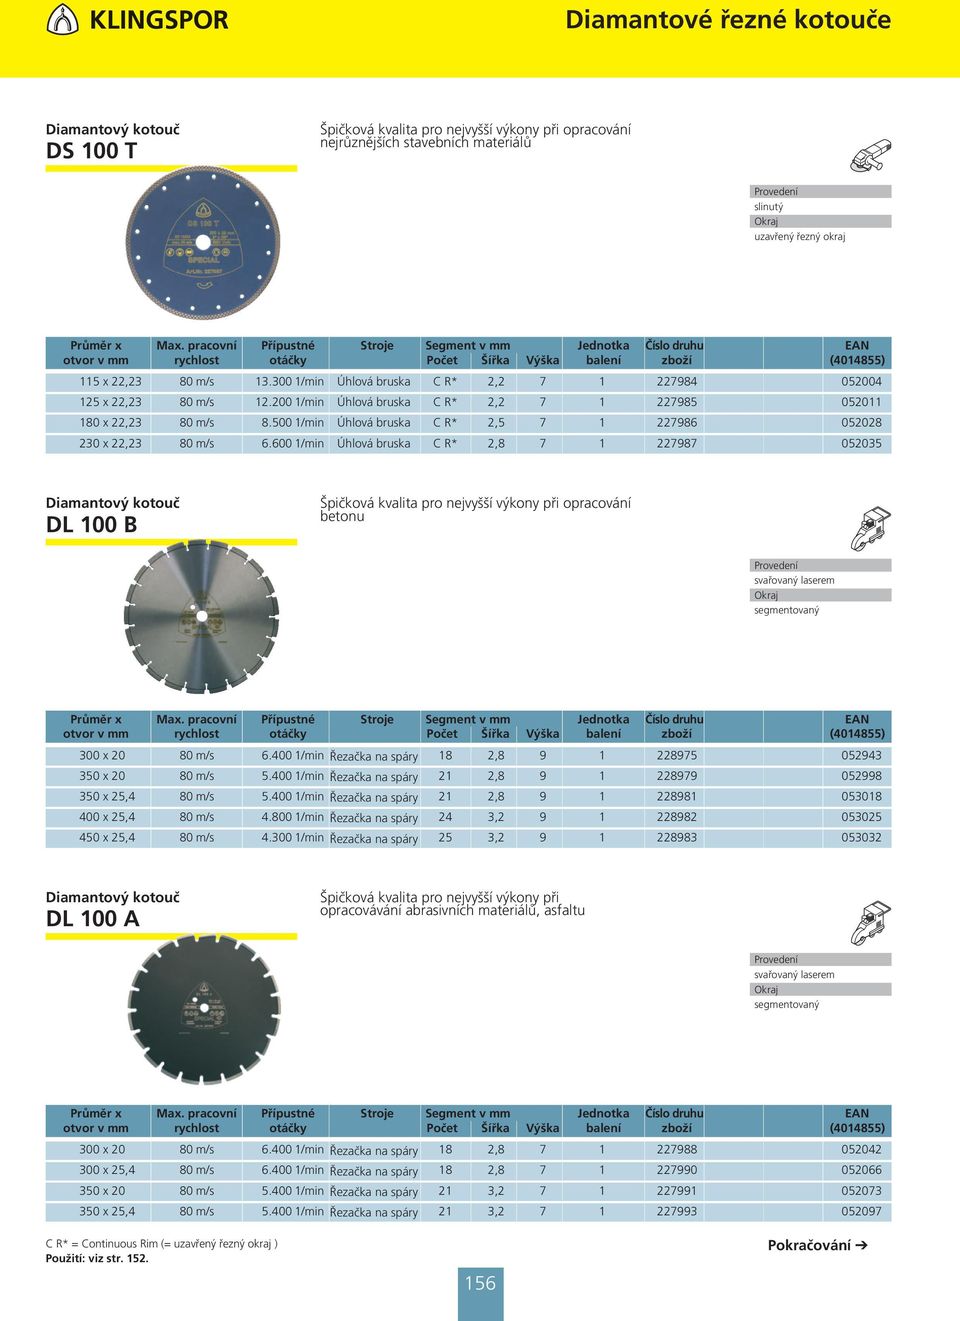 600 1/min Úhlová bruska C R* 2,8 7 1 227987 052035 DL 100 B Špičková kvalita pro nejvyšší výkony při opracování betonu 300 x 20 80 m/s 6.